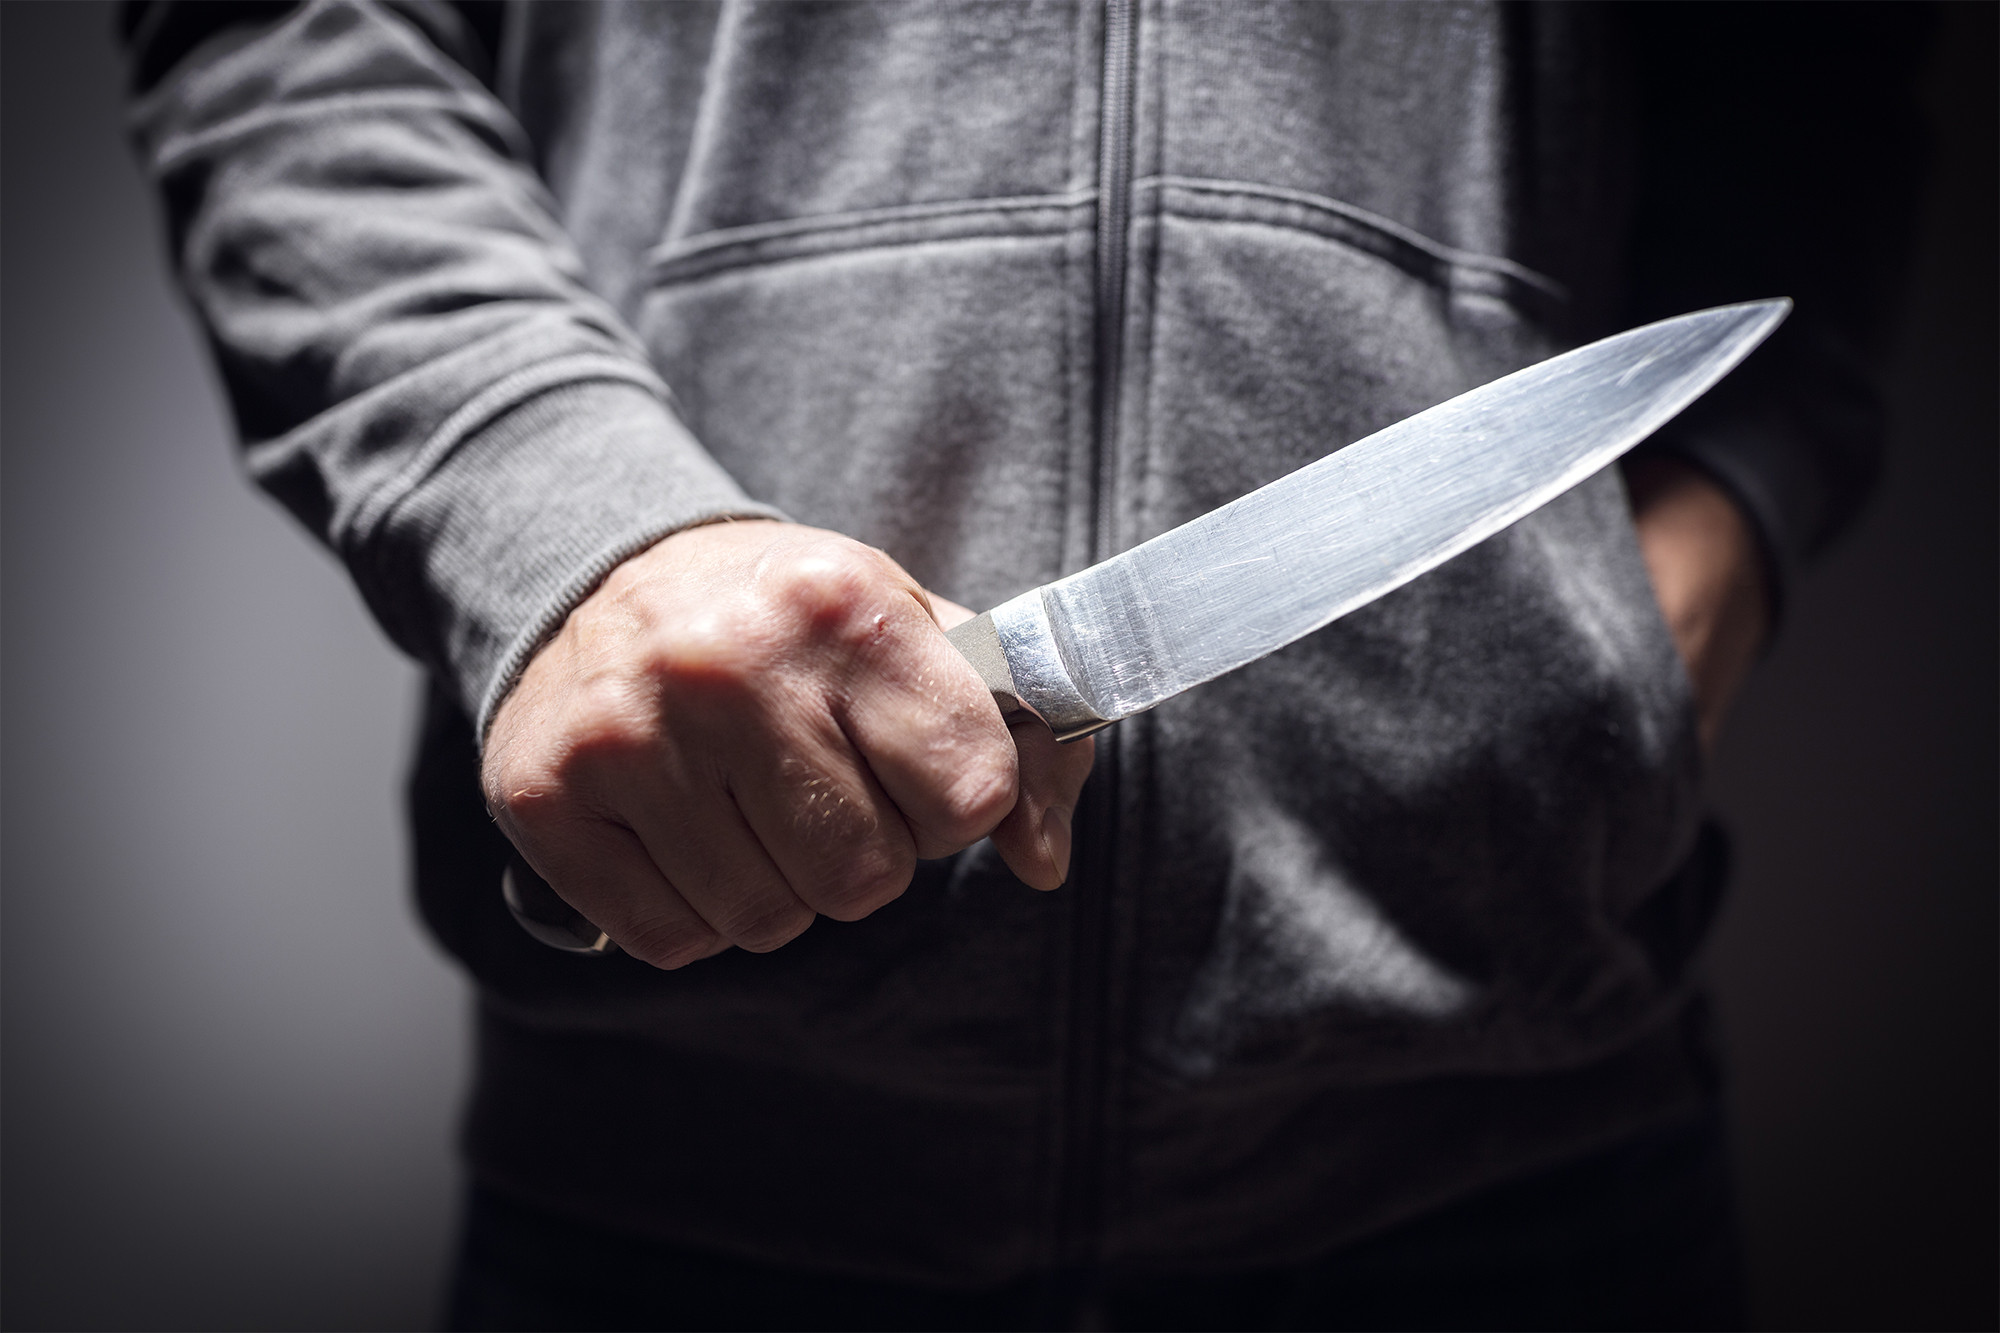 Σάμος: Αλγερινός σε κατάσταση αμόκ με μαχαίρι απειλούσε να σκοτώσει τη διευθύντρια του “hot spot”